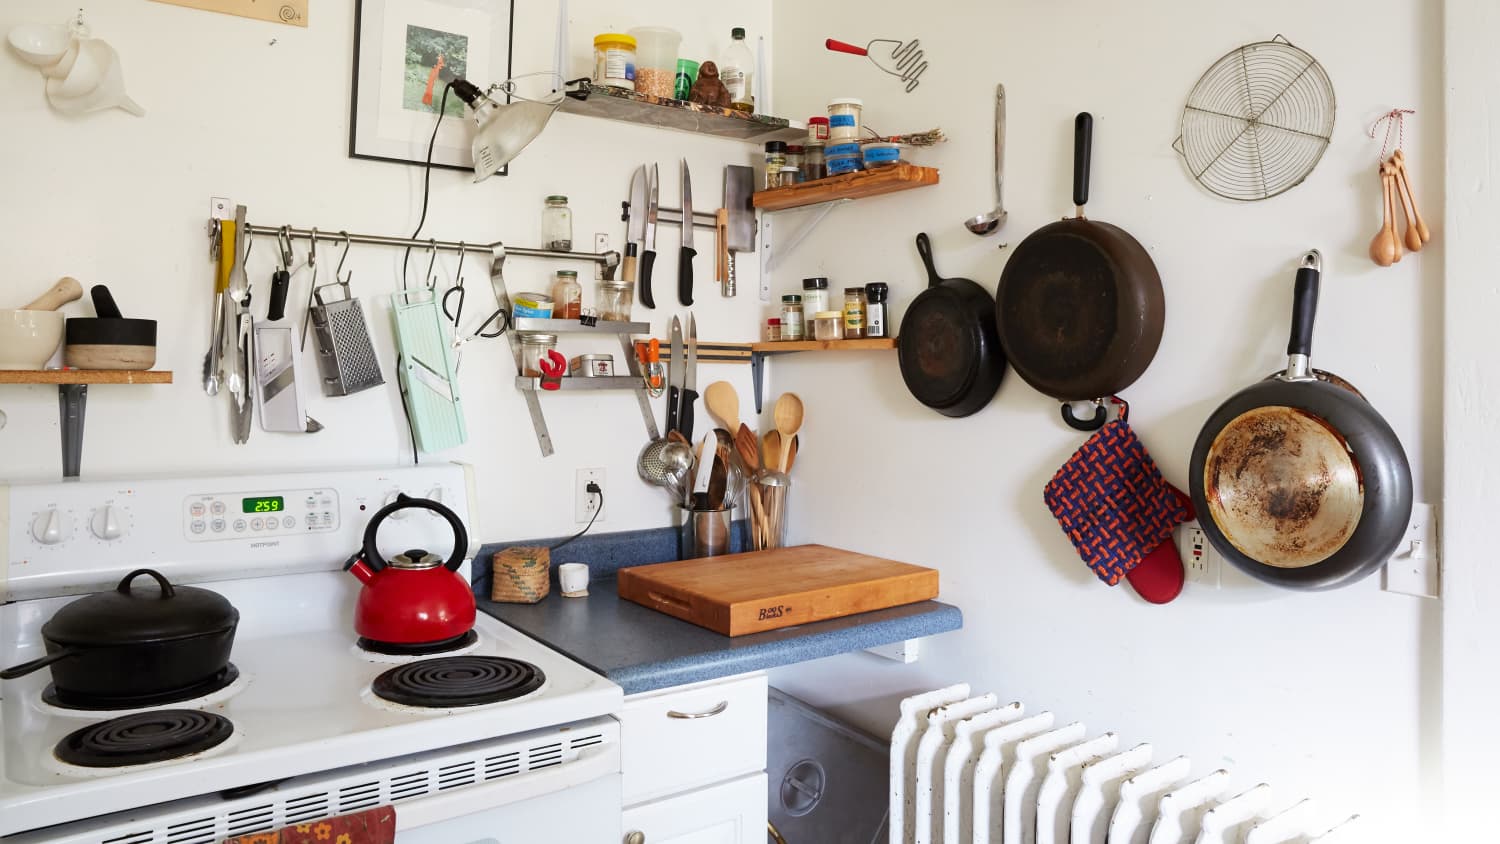 Pots and Pans - Premium Kitchen Cookware, Tools & Appliances